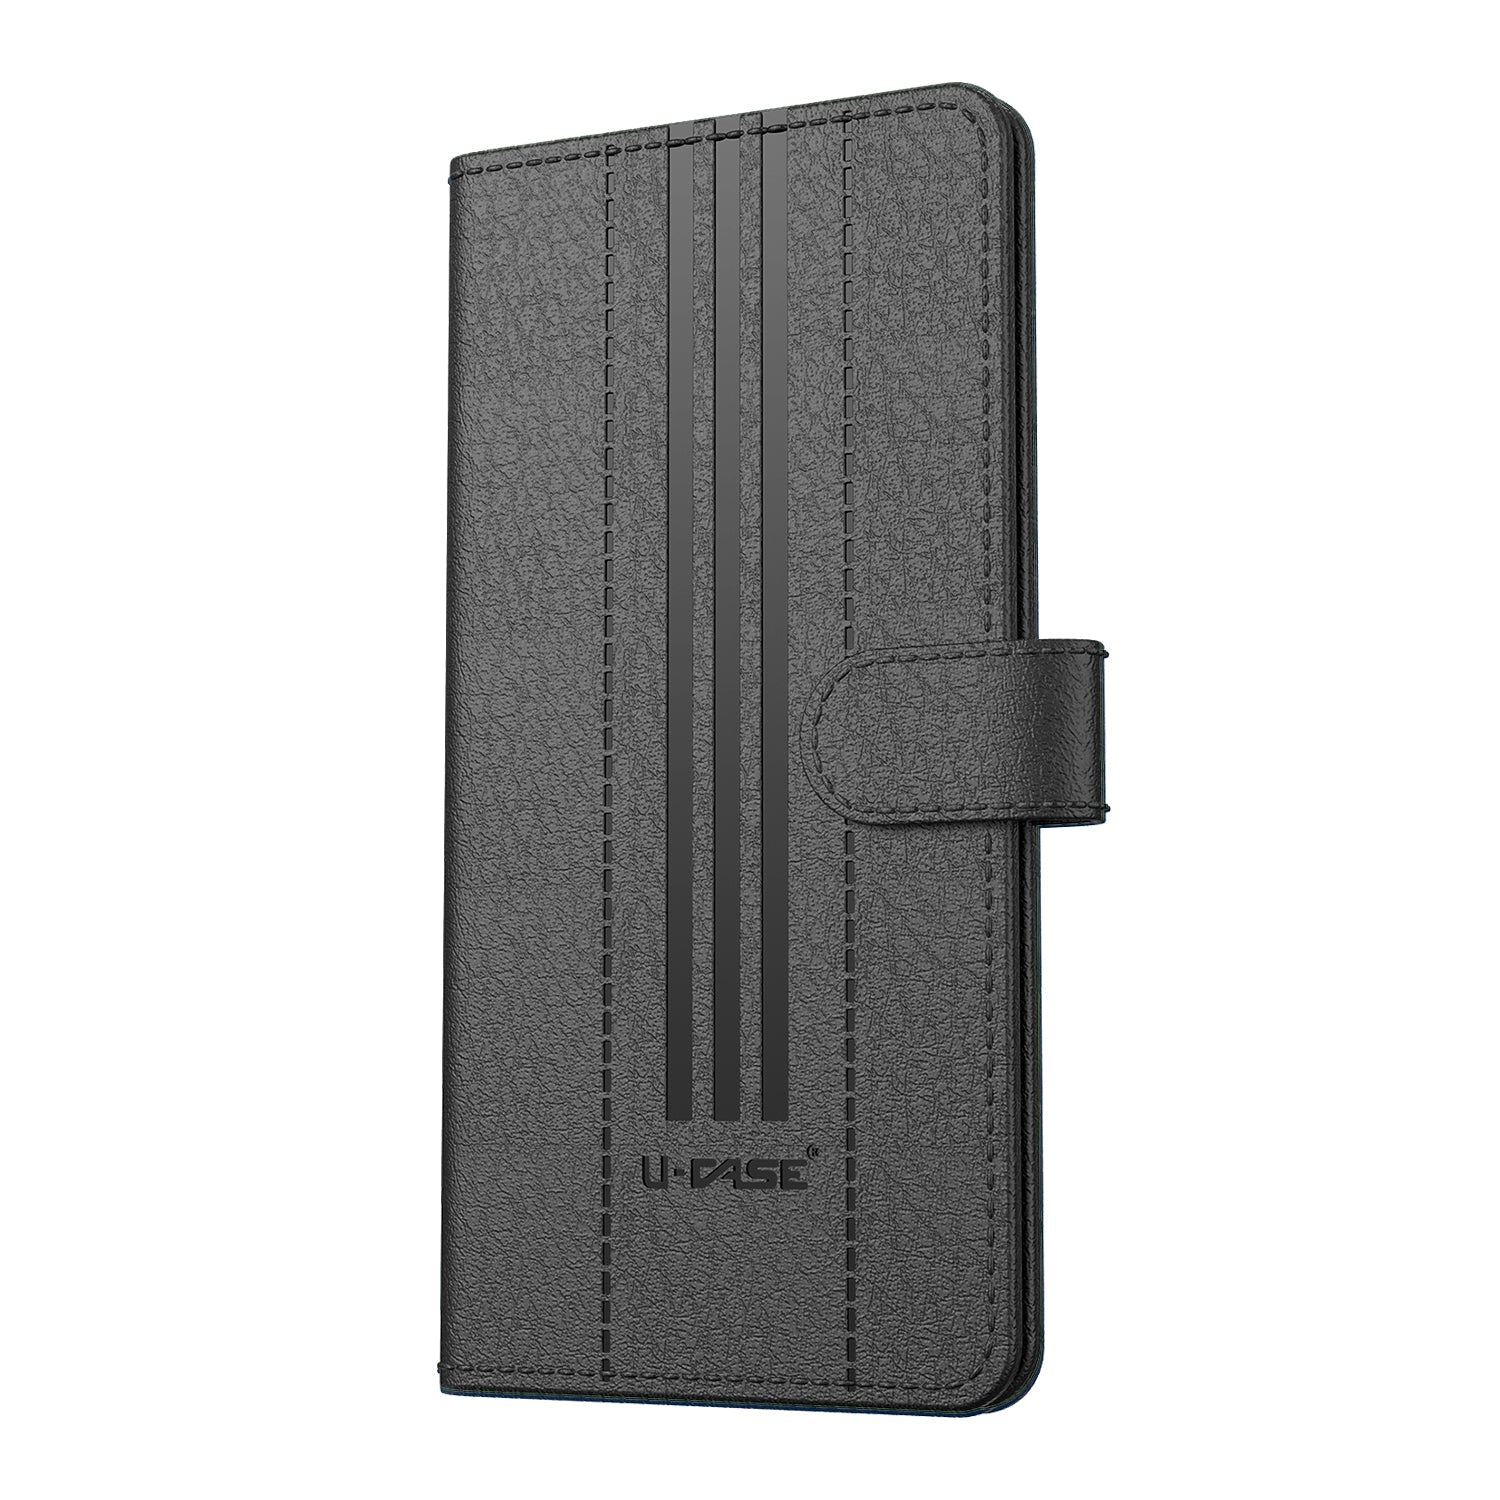 U-CASE Flip Cover for Realme C12, Realme Narzo 20, Realme Narzo 30A, Realme C25, Realme C25s Foldable Stand & Pocket Magnetic Closure front